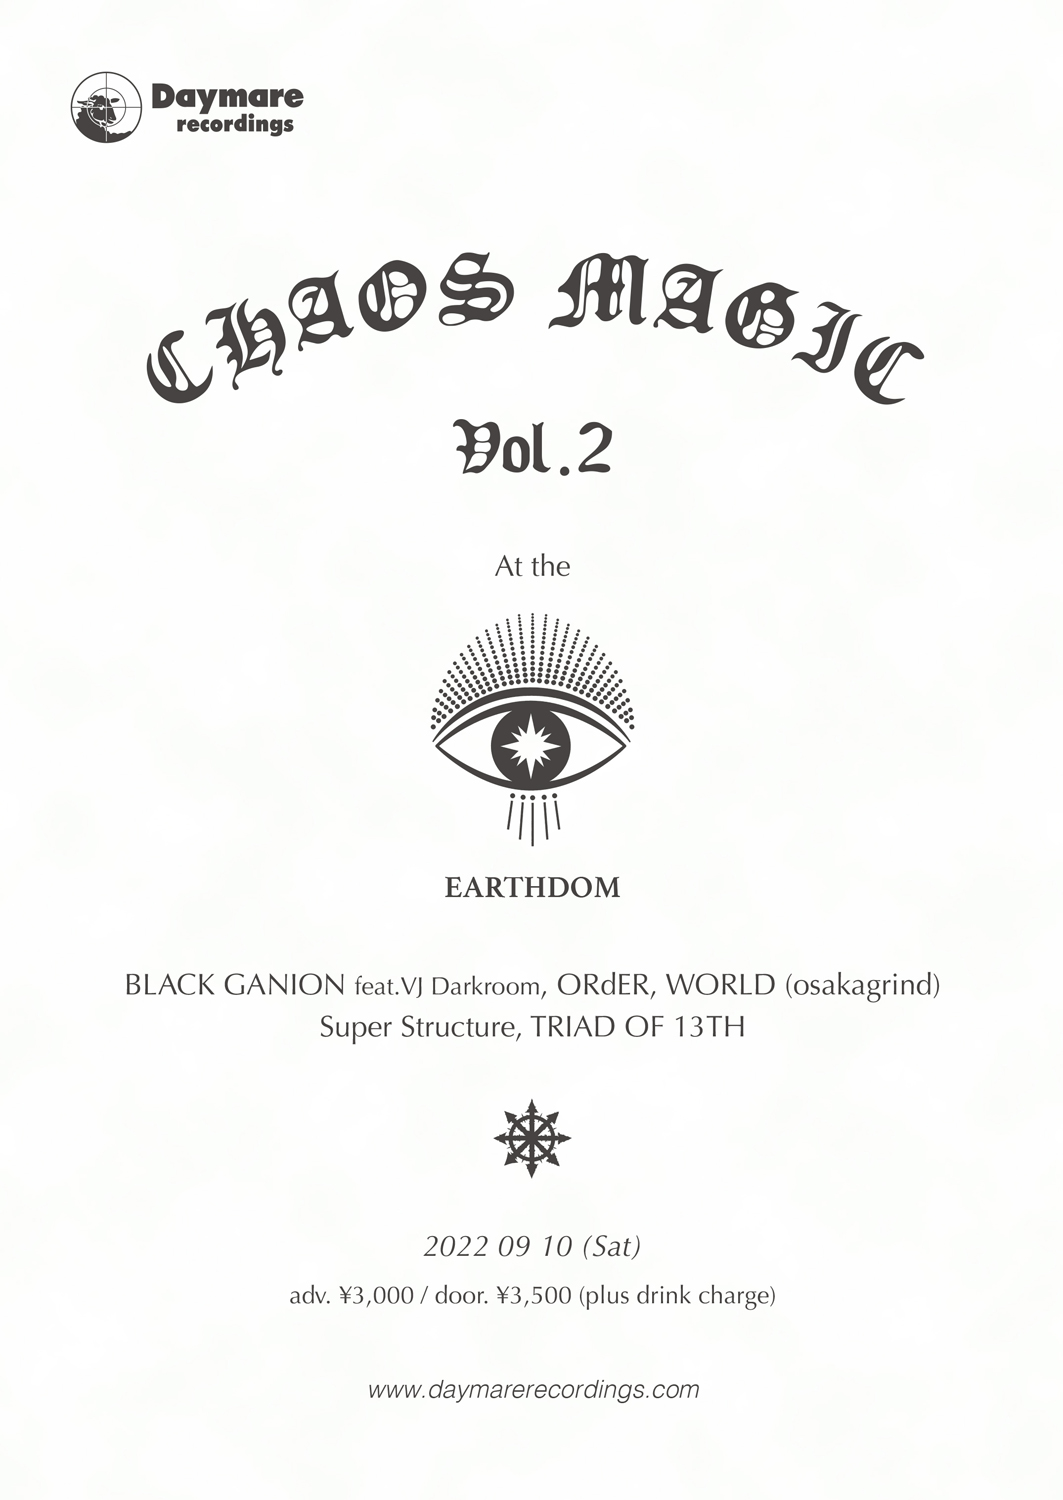 CHAOS MAGIC Vol.2